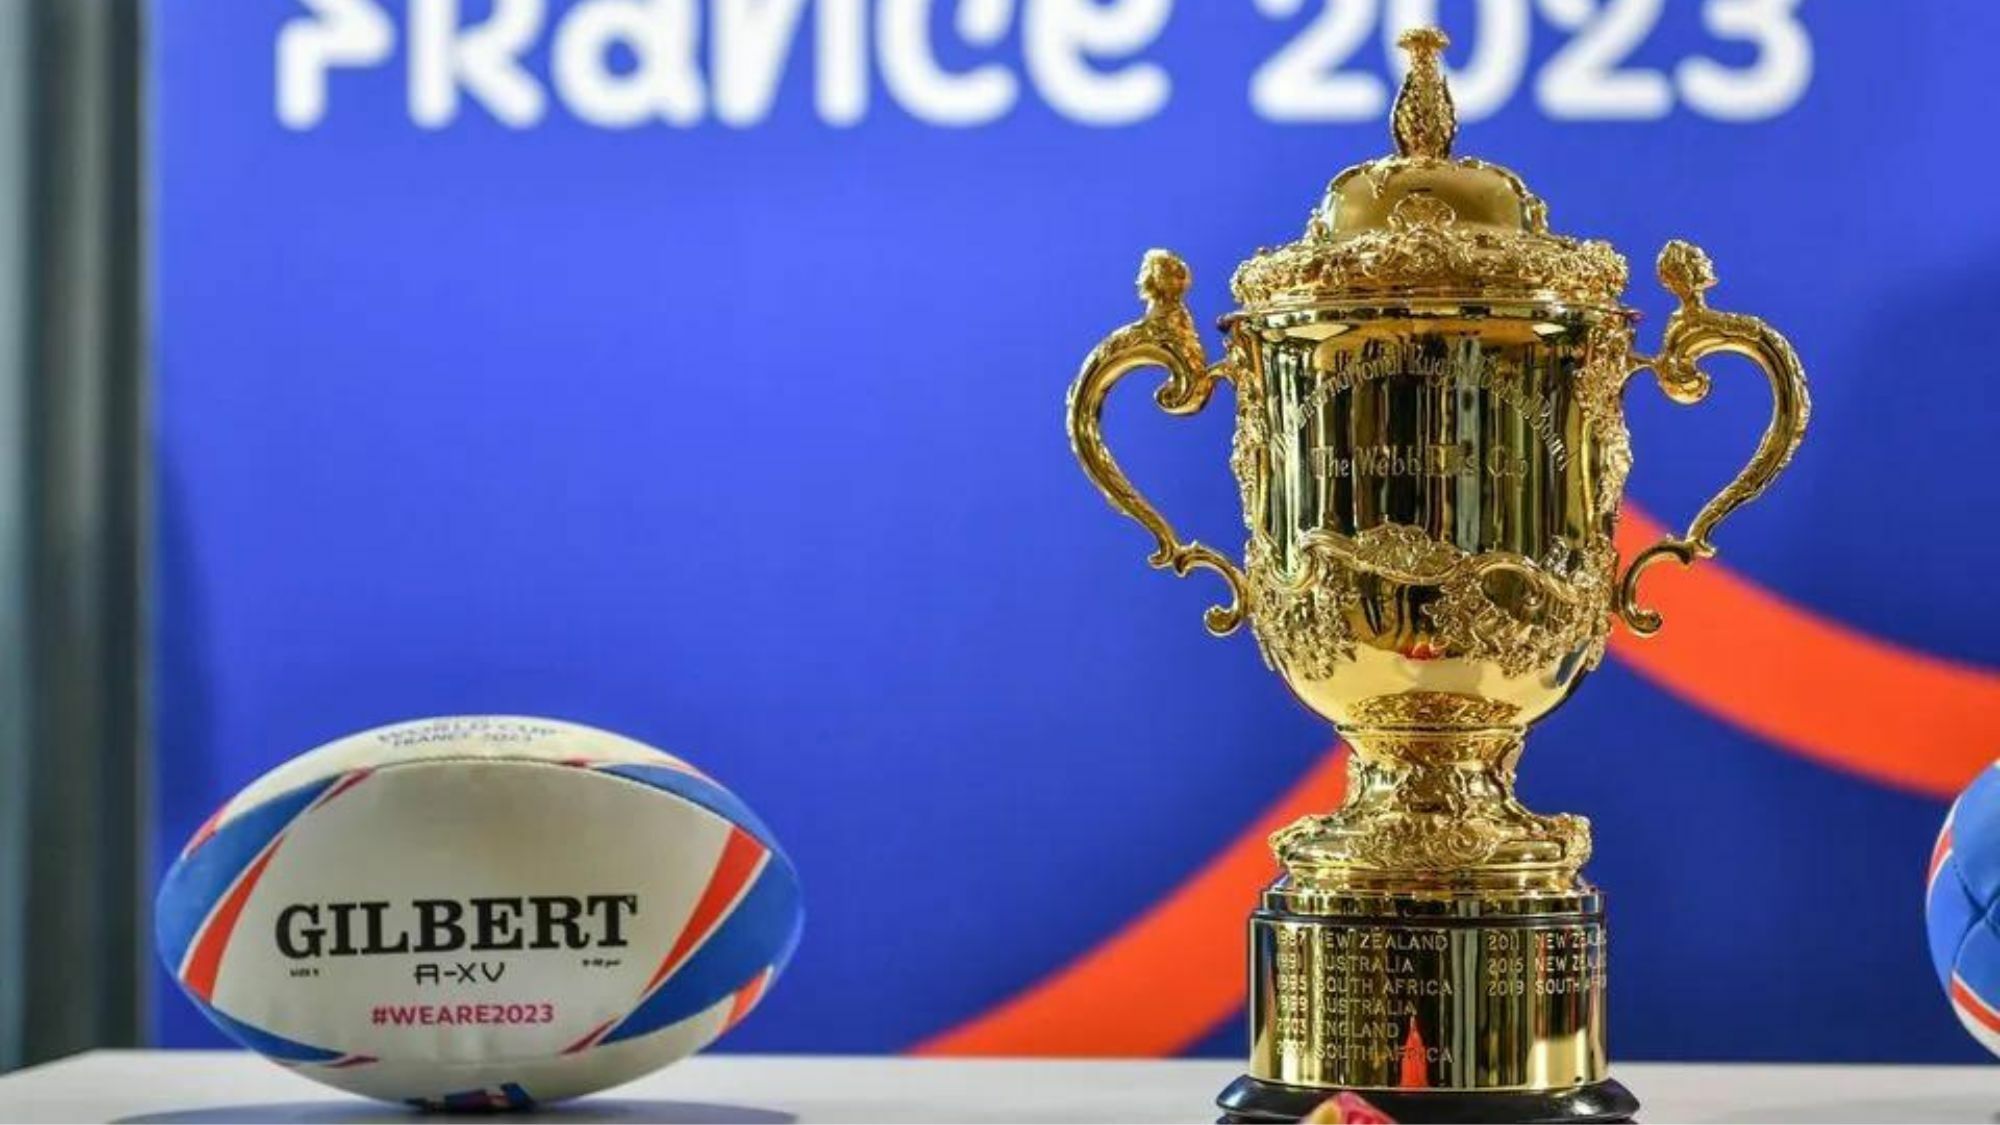 Le trophée de la Coupe du Monde de Rugby exposé ce jeudi sur Grand Place